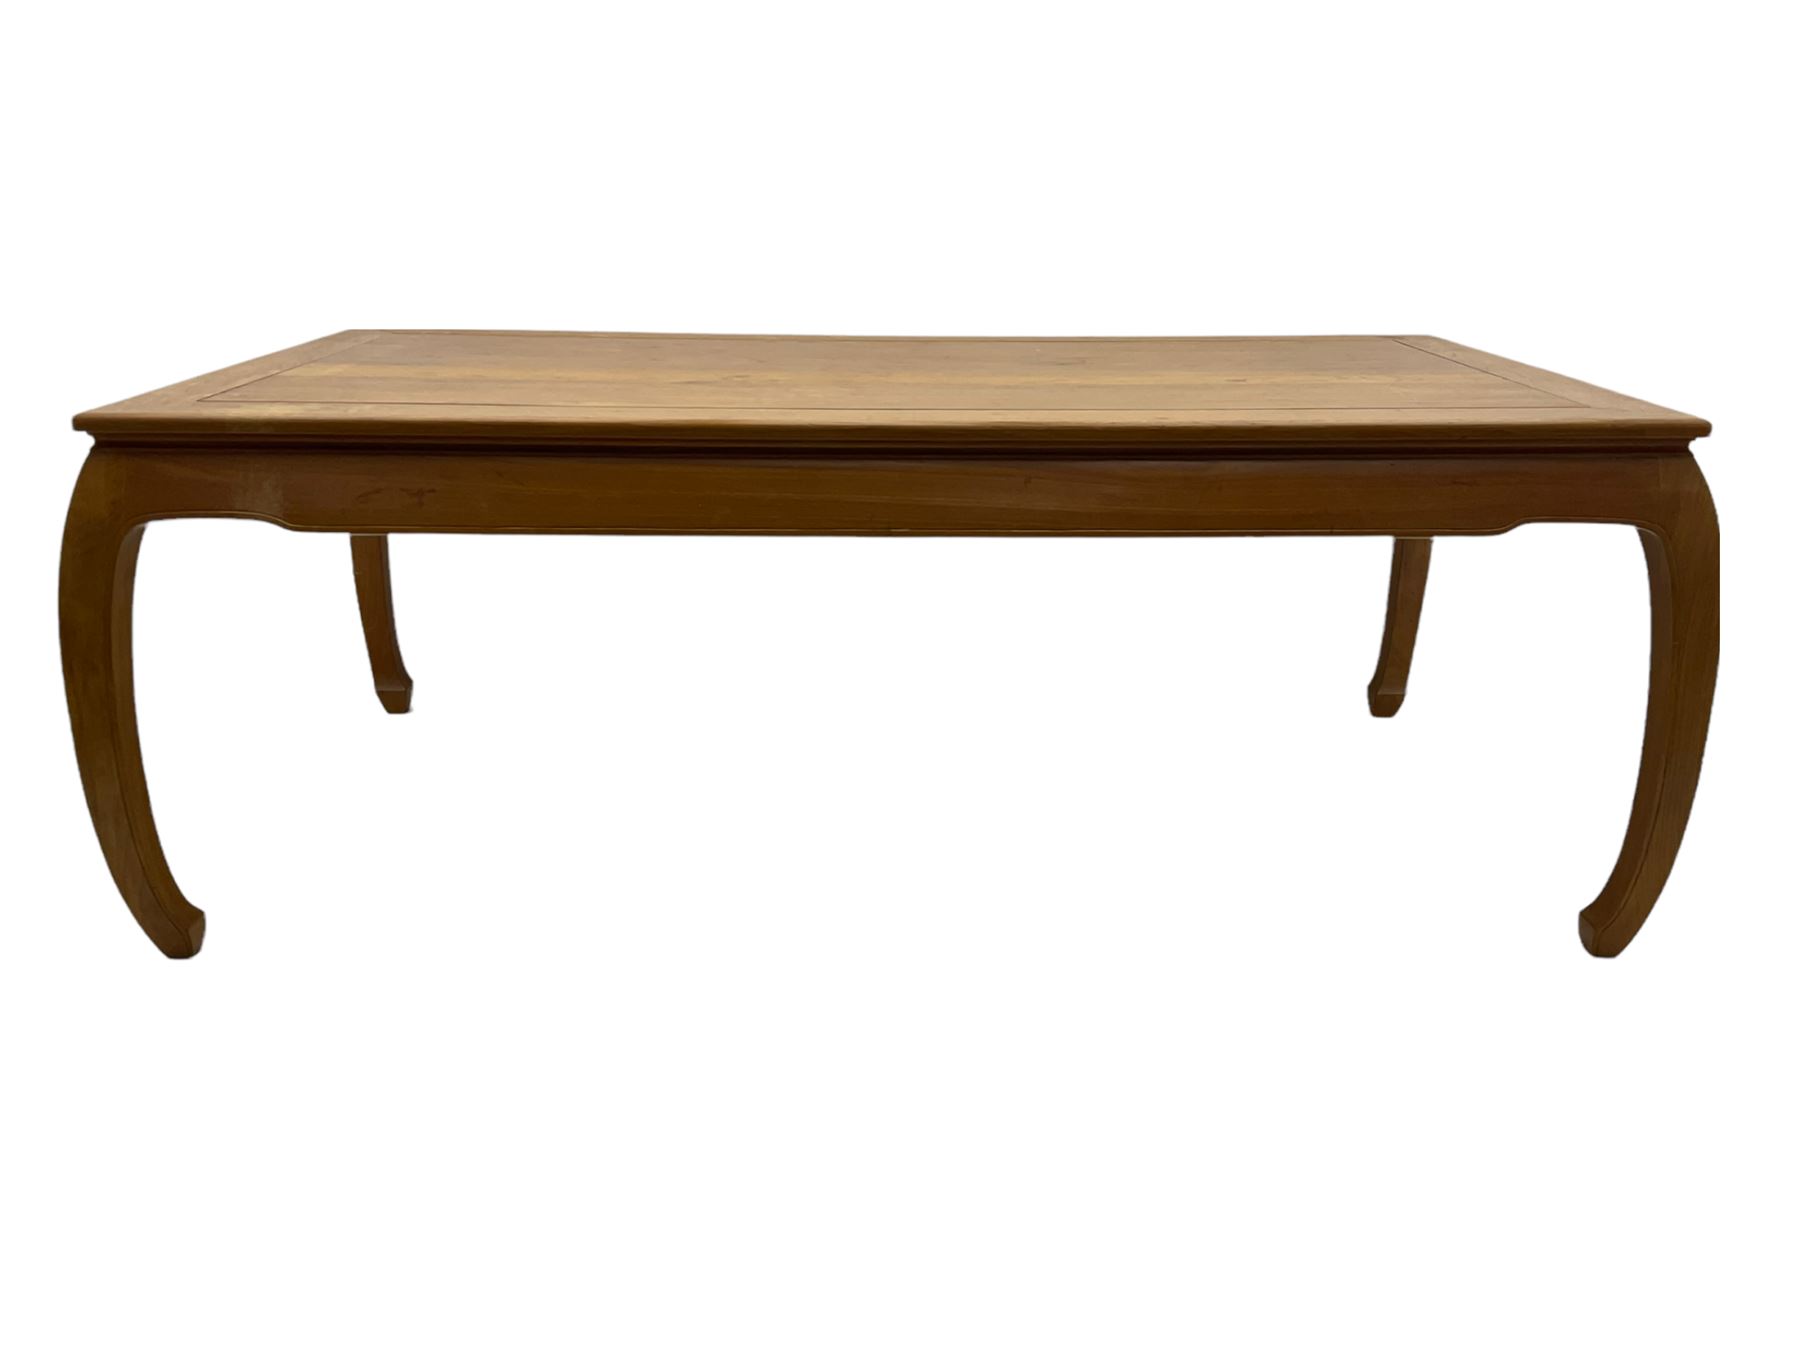 Oriental hardwood rectangular dining table - Image 3 of 22